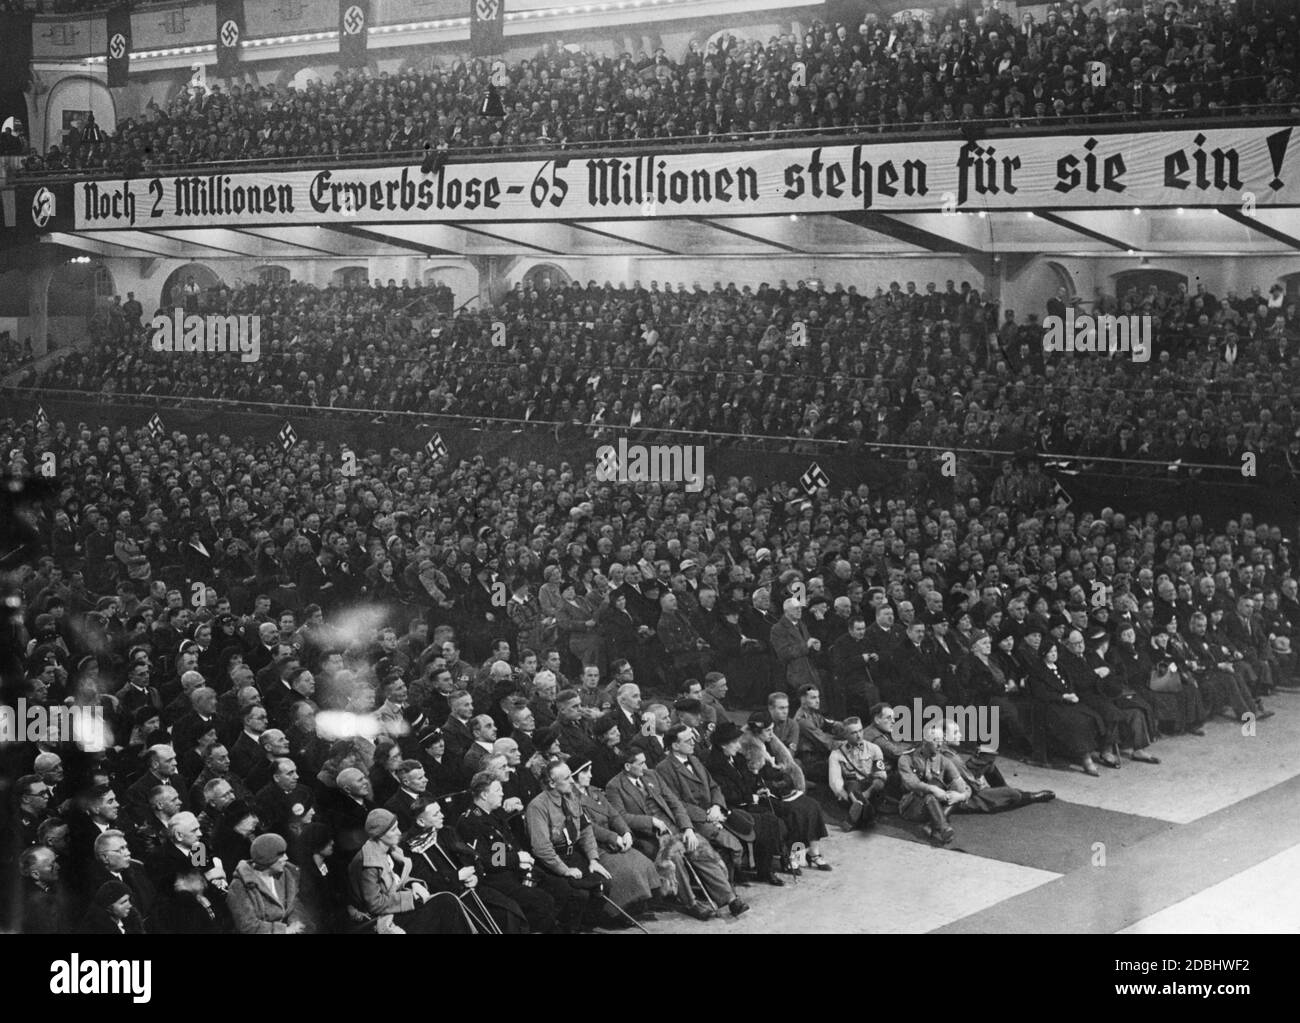 'Vue du public lors d'un discours de Joseph Goebbels au Sportpalast de Berlin. Certains membres de l'AS sont assis sur le plancher. Une bannière lit ''2 millions de chômeurs - 65 millions de personnes restent debout pour eux!''' Banque D'Images